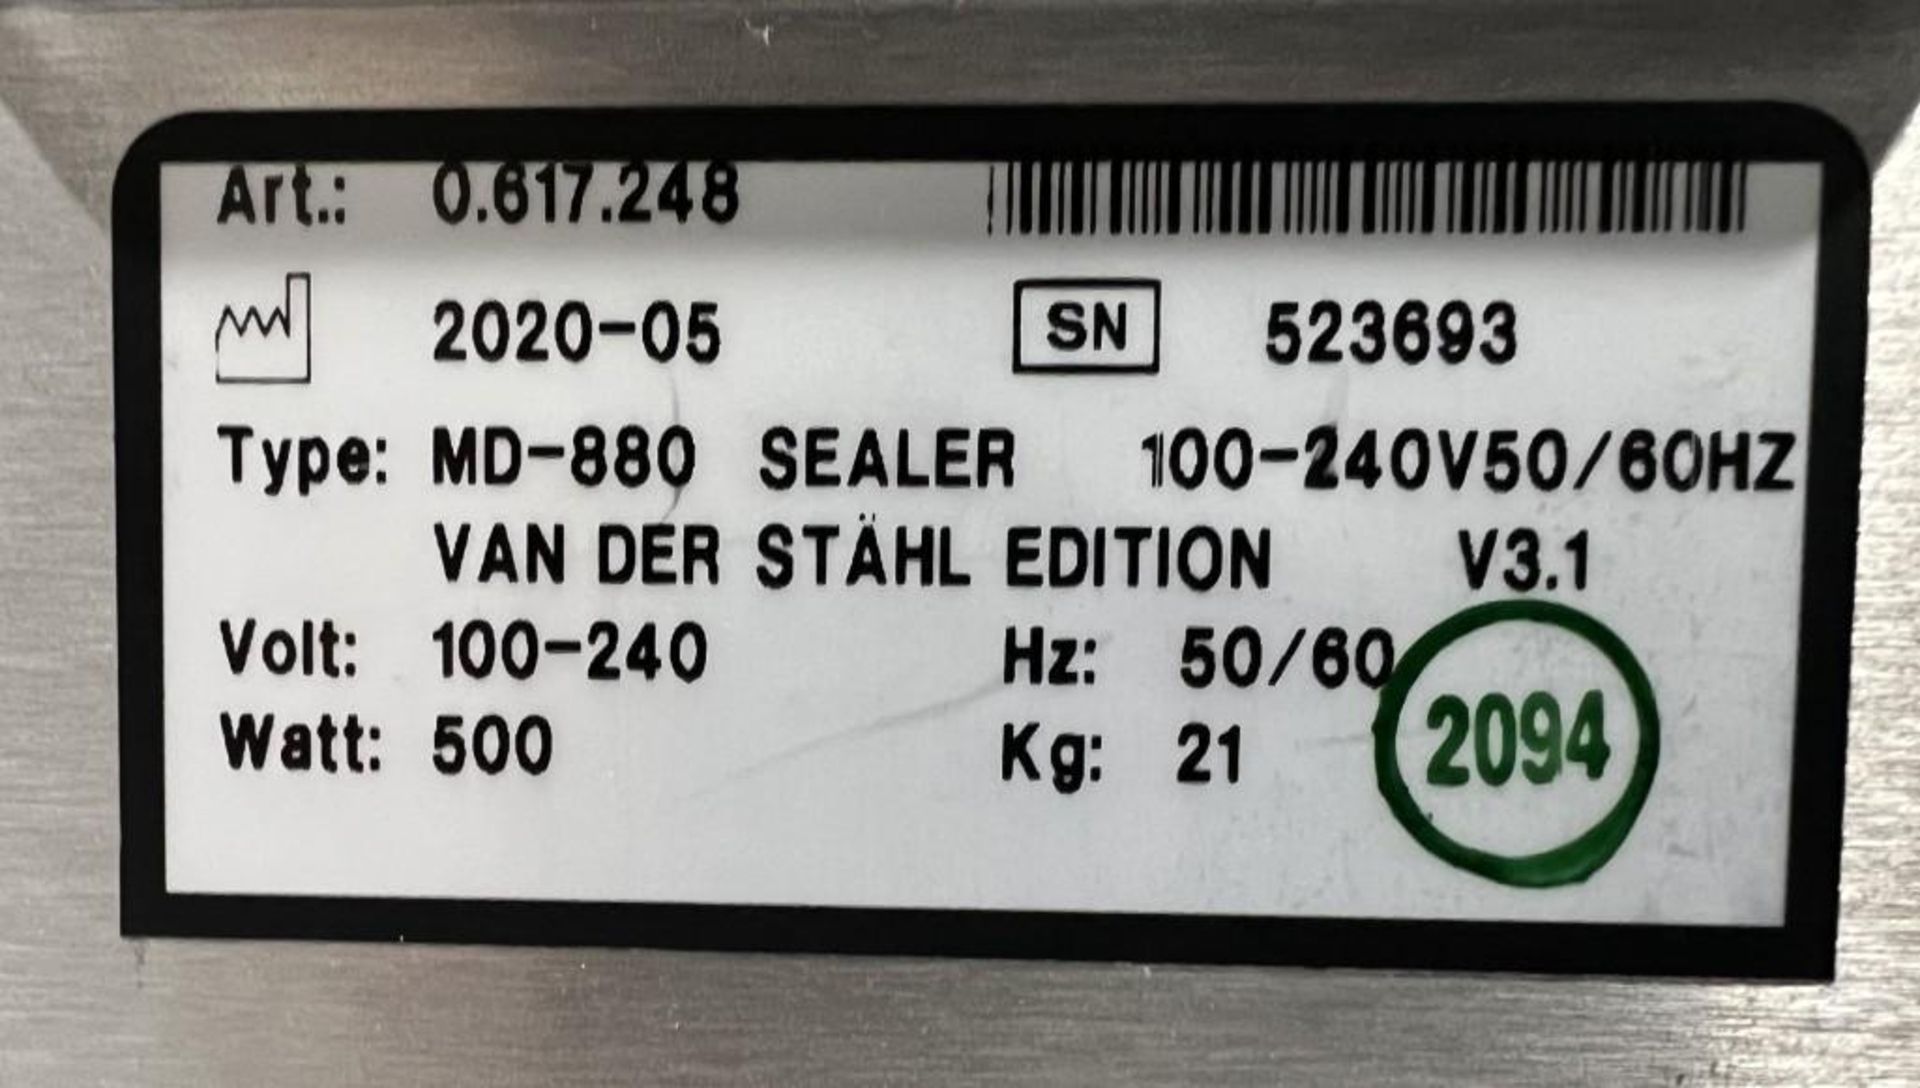 Van Der Stahl MD Series Pouch Sealer, Model MD-880, Serial# 523693, Built 05-2020. - Image 6 of 6